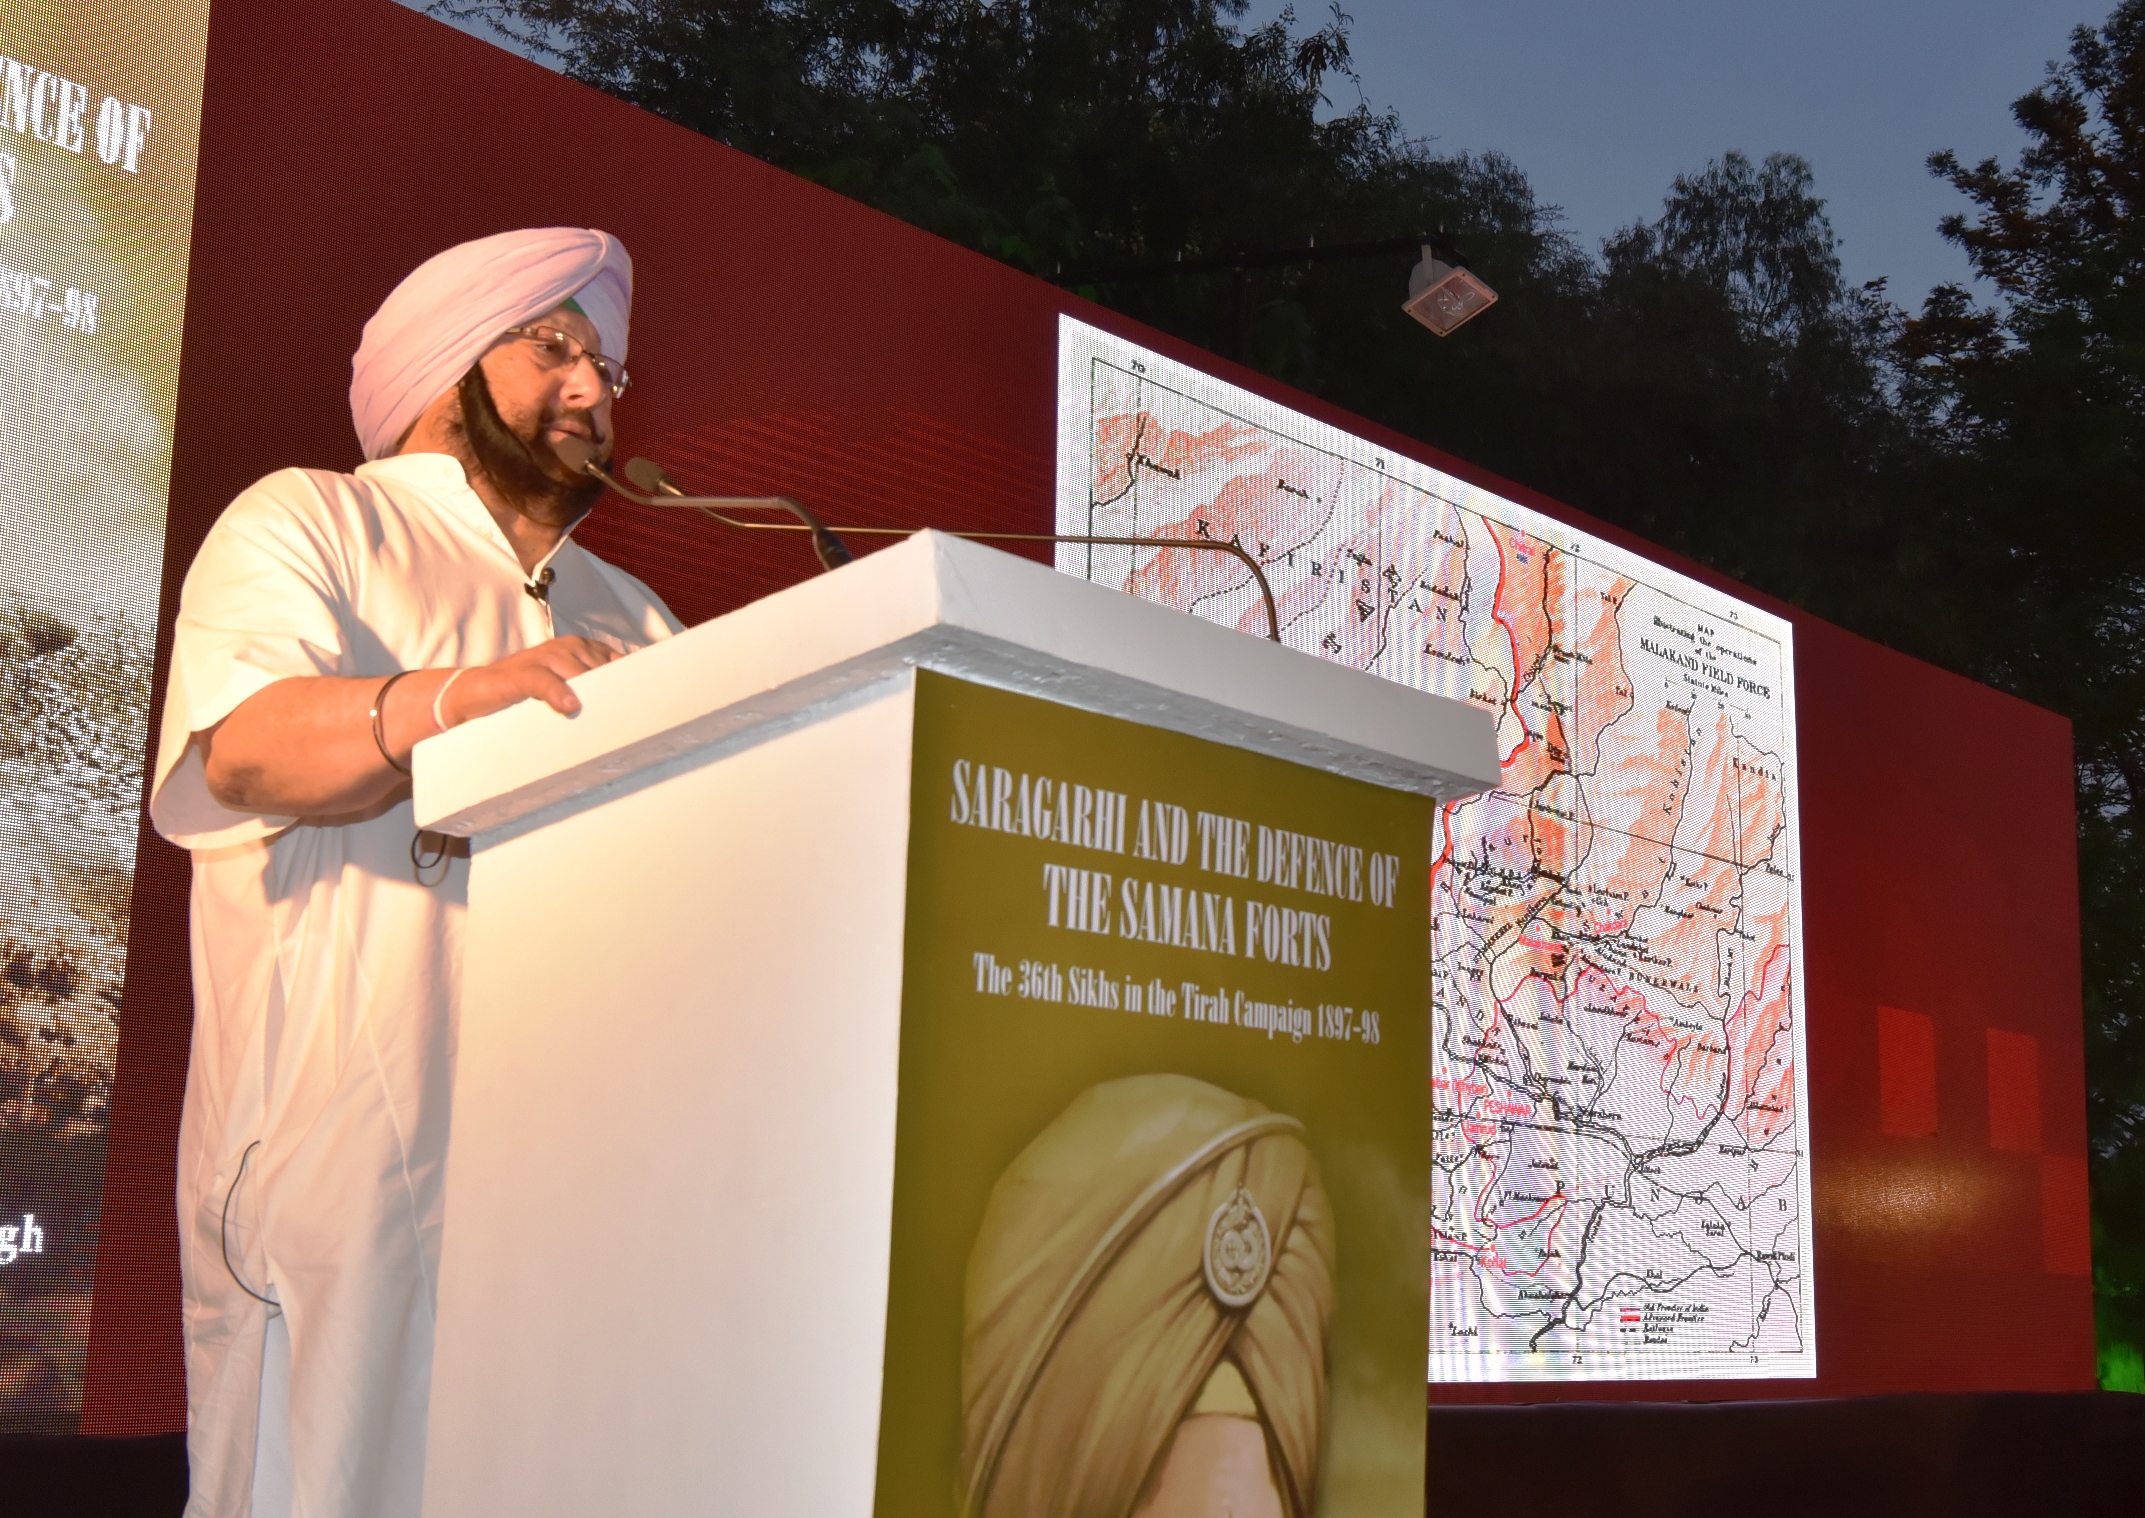 Capt Amarinder Singh unveils his much-awaited book on the Saragarhi battle